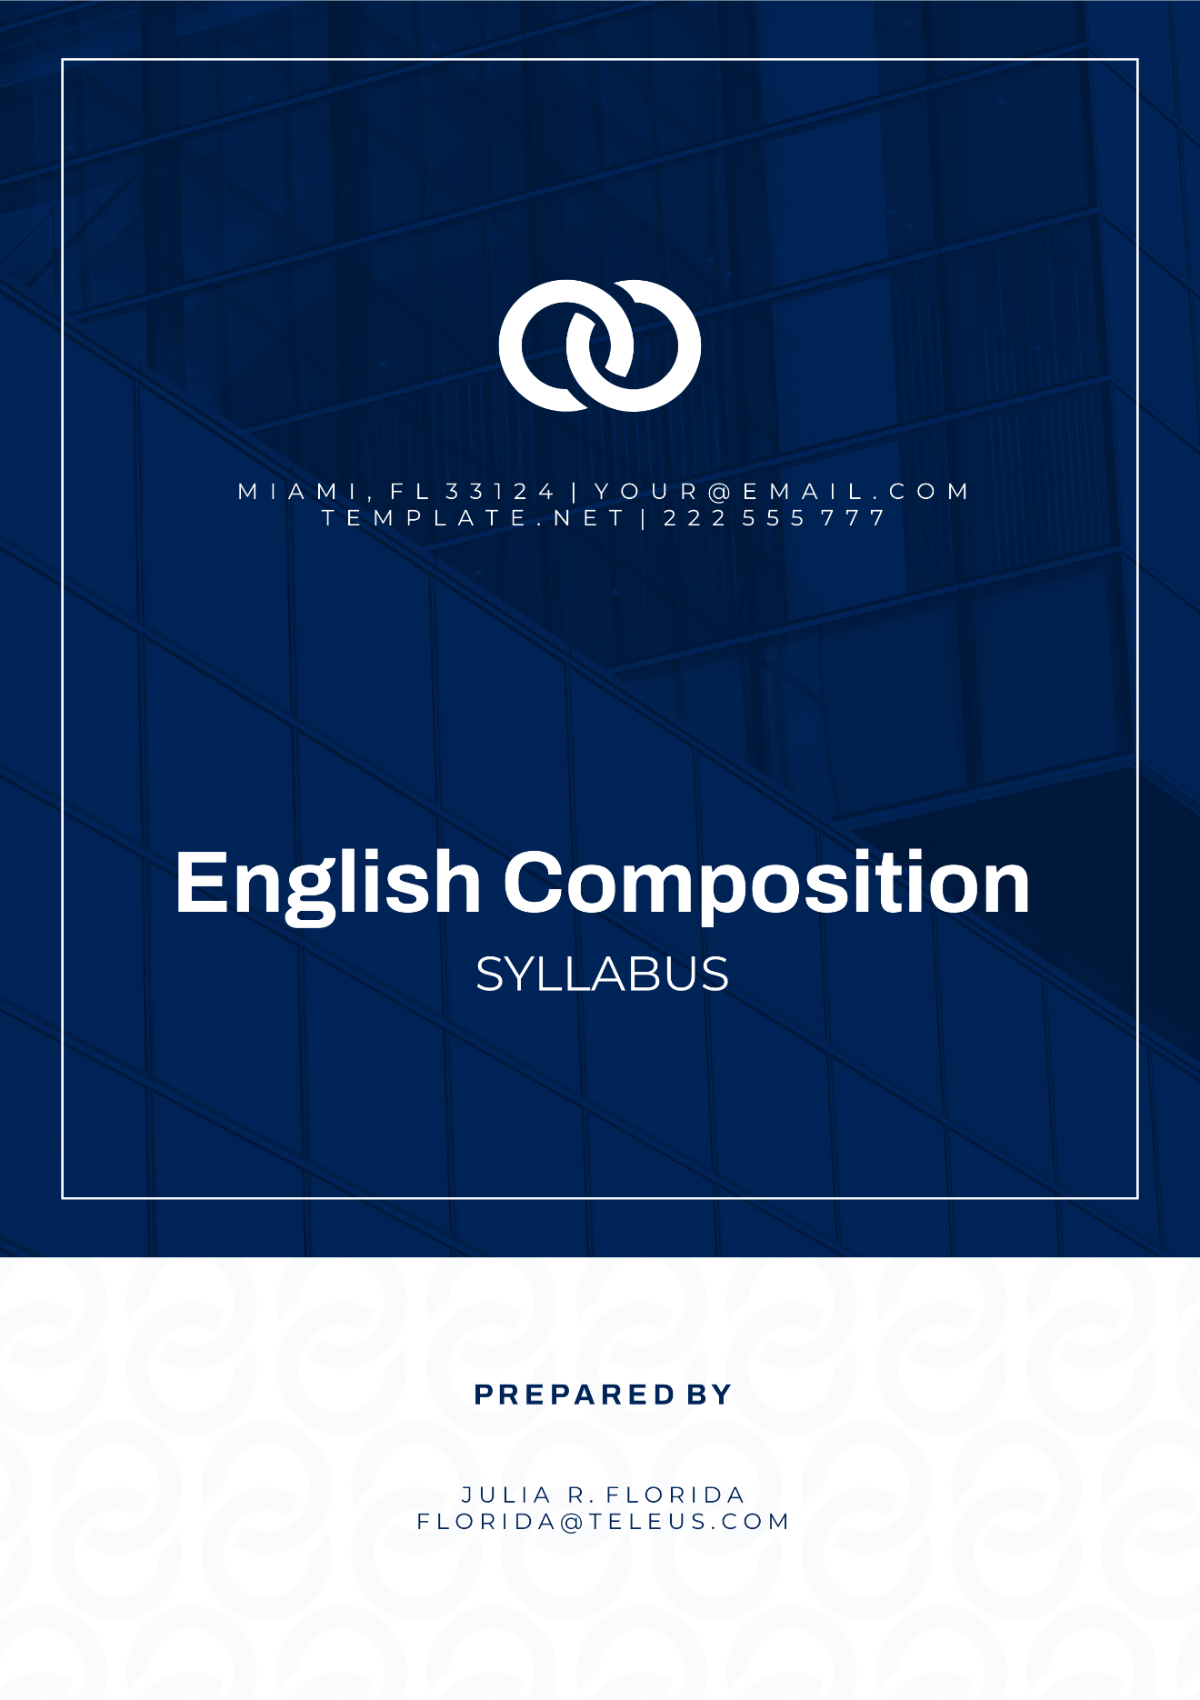 English Composition Syllabus Template